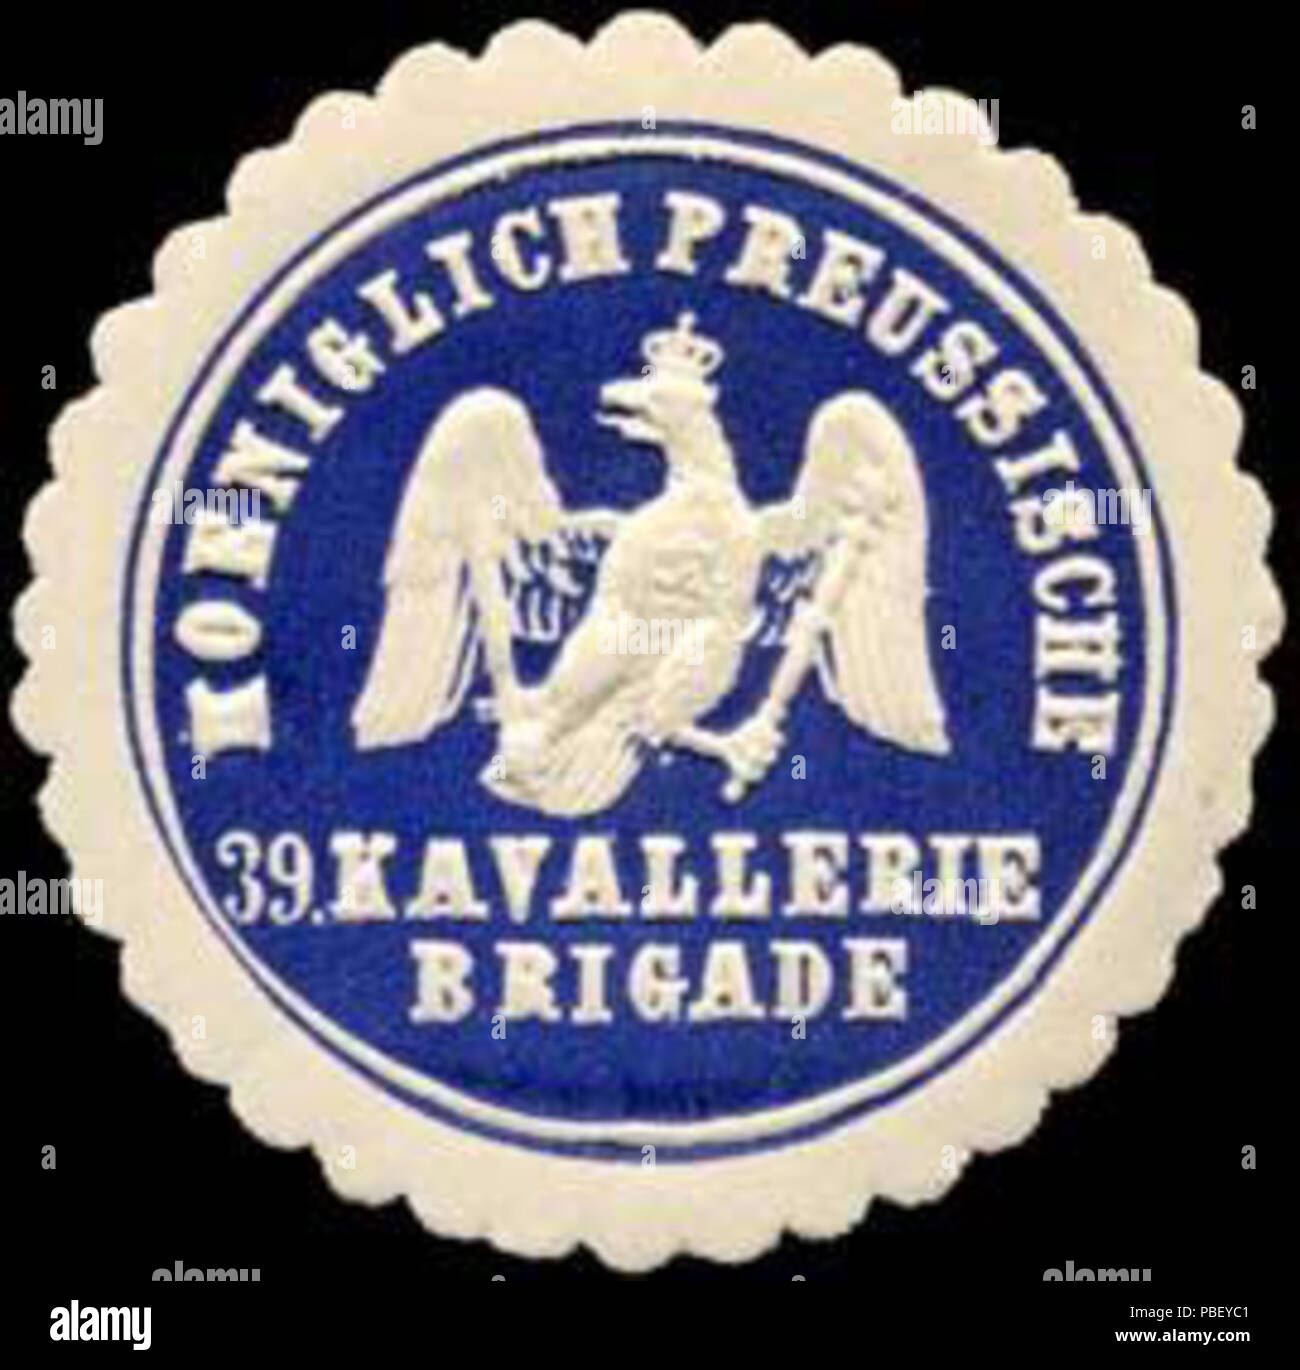 1441 Siegelmarke Koeniglich Preussische 39. Kavallerie Brigade W0238073 Stock Photo